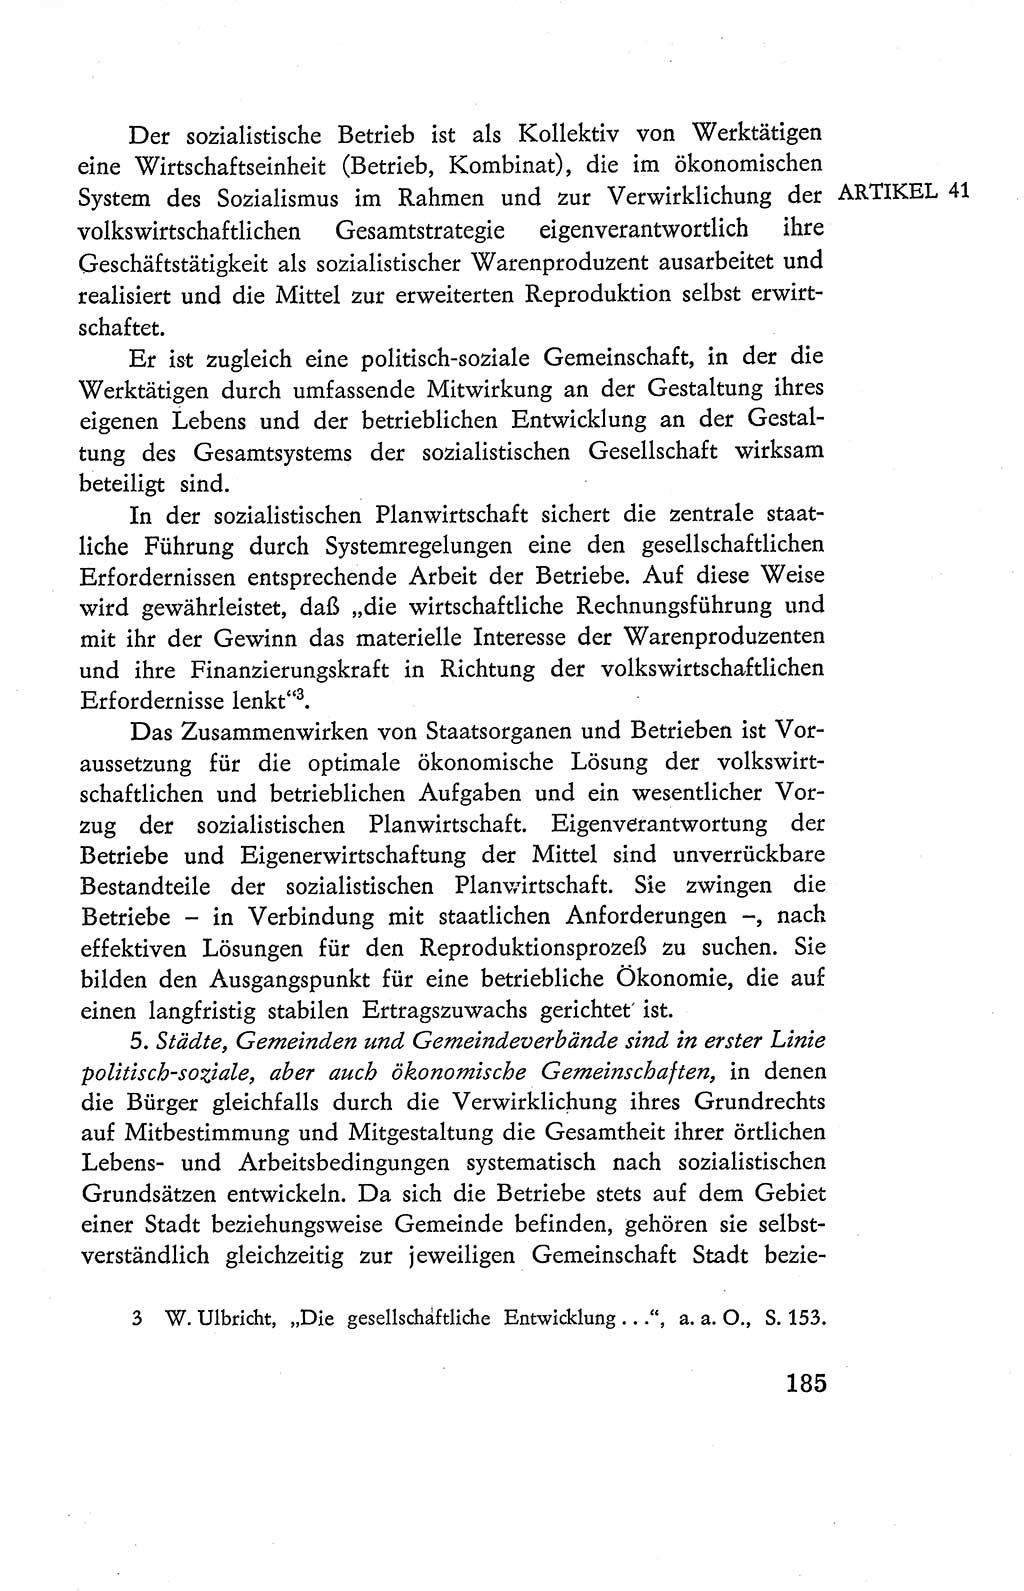 Verfassung der Deutschen Demokratischen Republik (DDR), Dokumente, Kommentar 1969, Band 2, Seite 185 (Verf. DDR Dok. Komm. 1969, Bd. 2, S. 185)